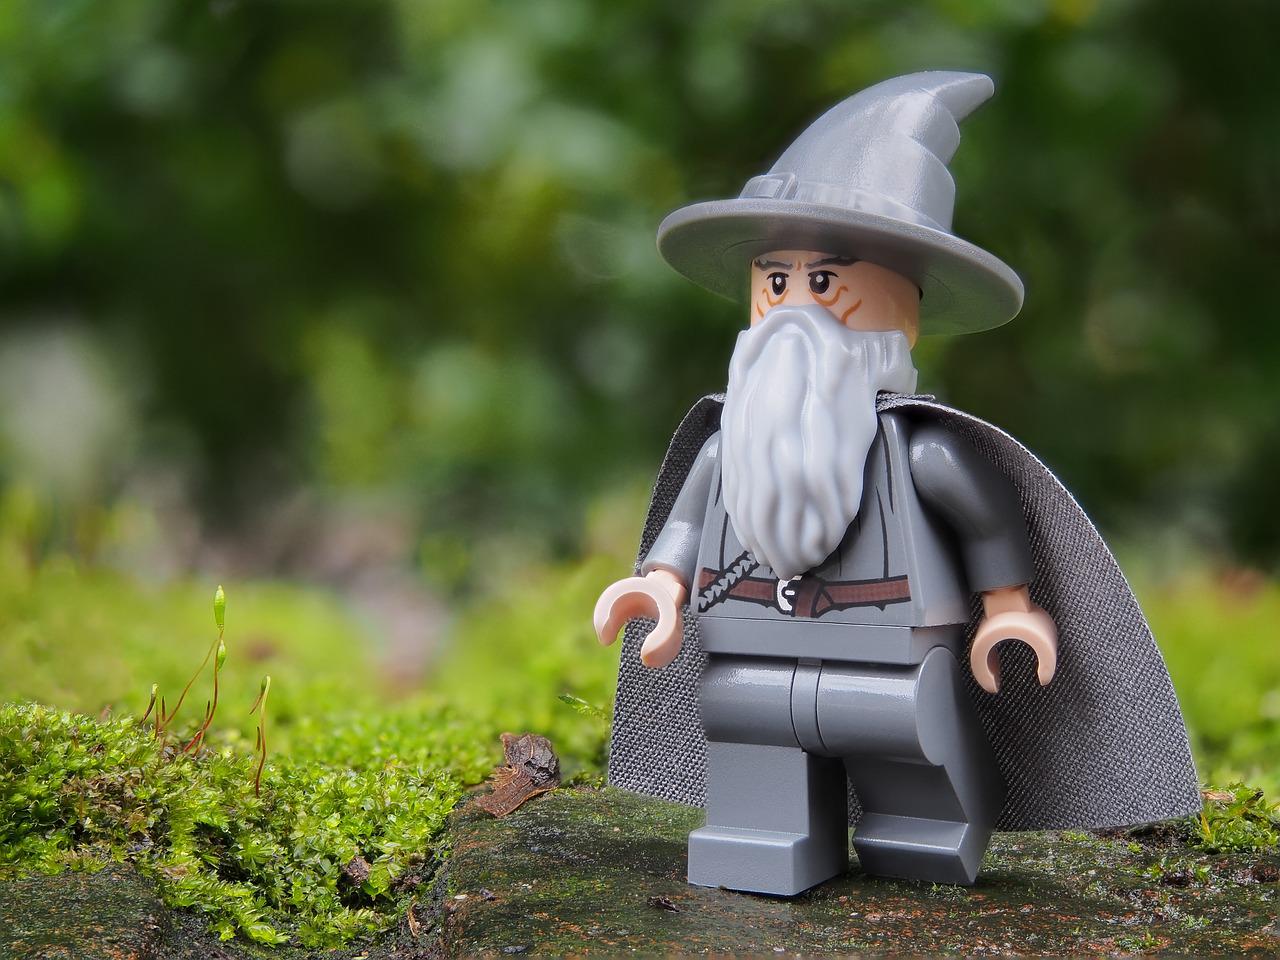 Figurka Gandalfa z Władcy pierścieni stojąca wśród trawy